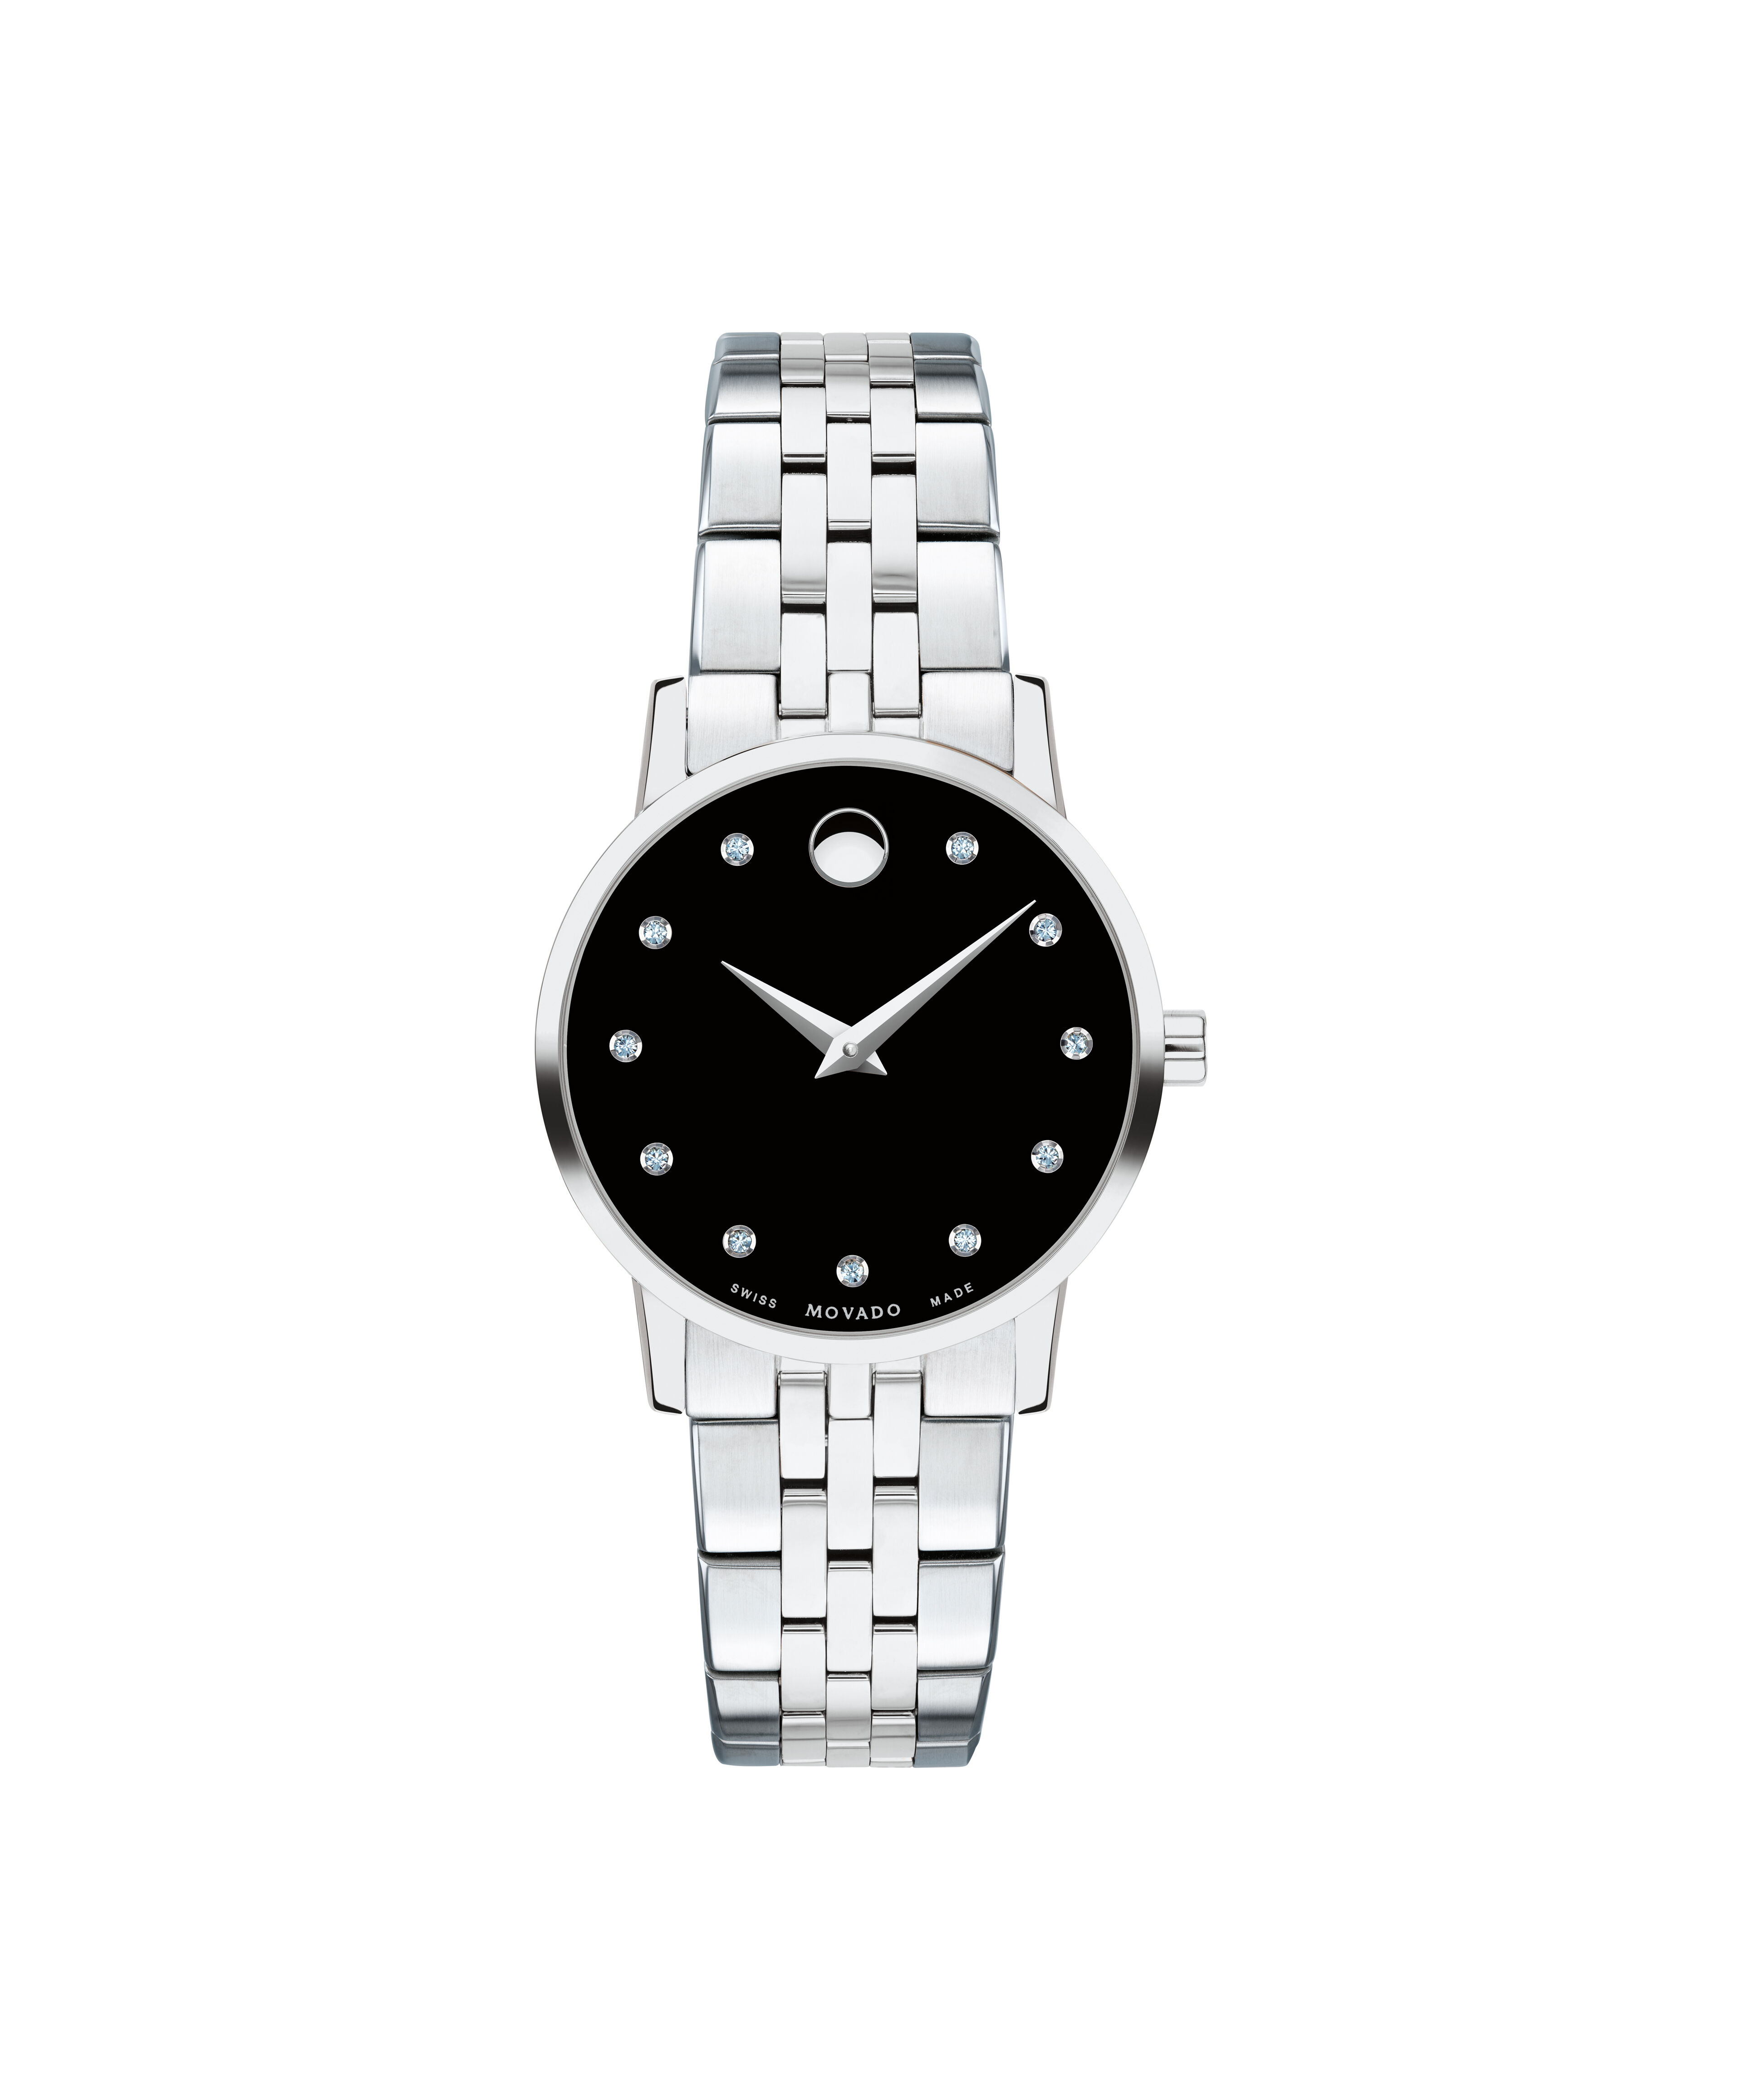 Replica Rolex Watch Online Worth